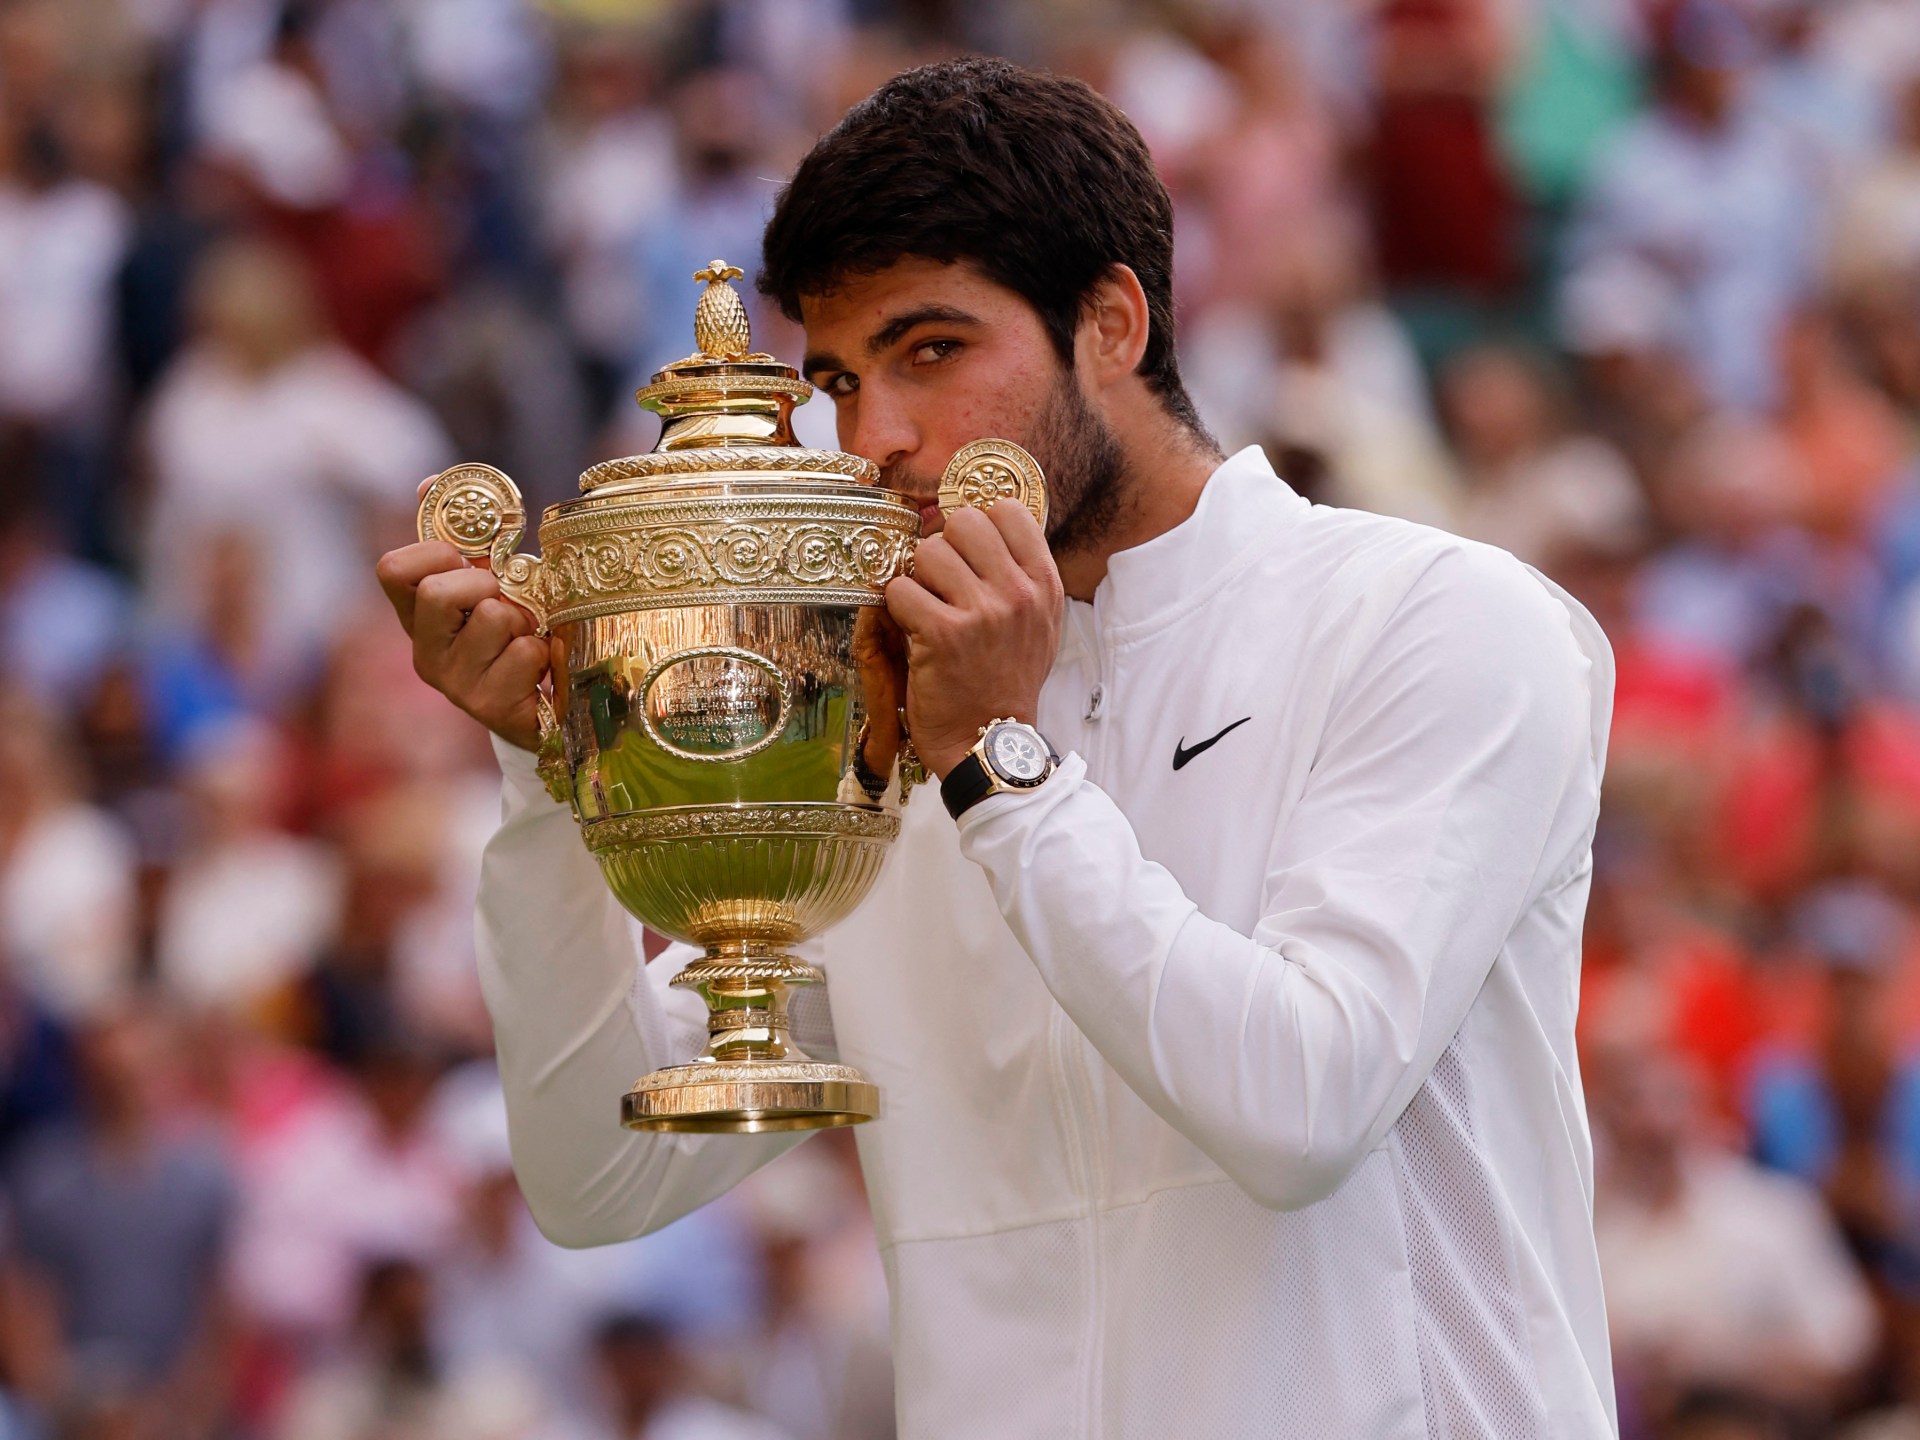 Algaraz acaba con el reinado de Djokovic en Wimbledon en un thriller final |  Noticias de tenis